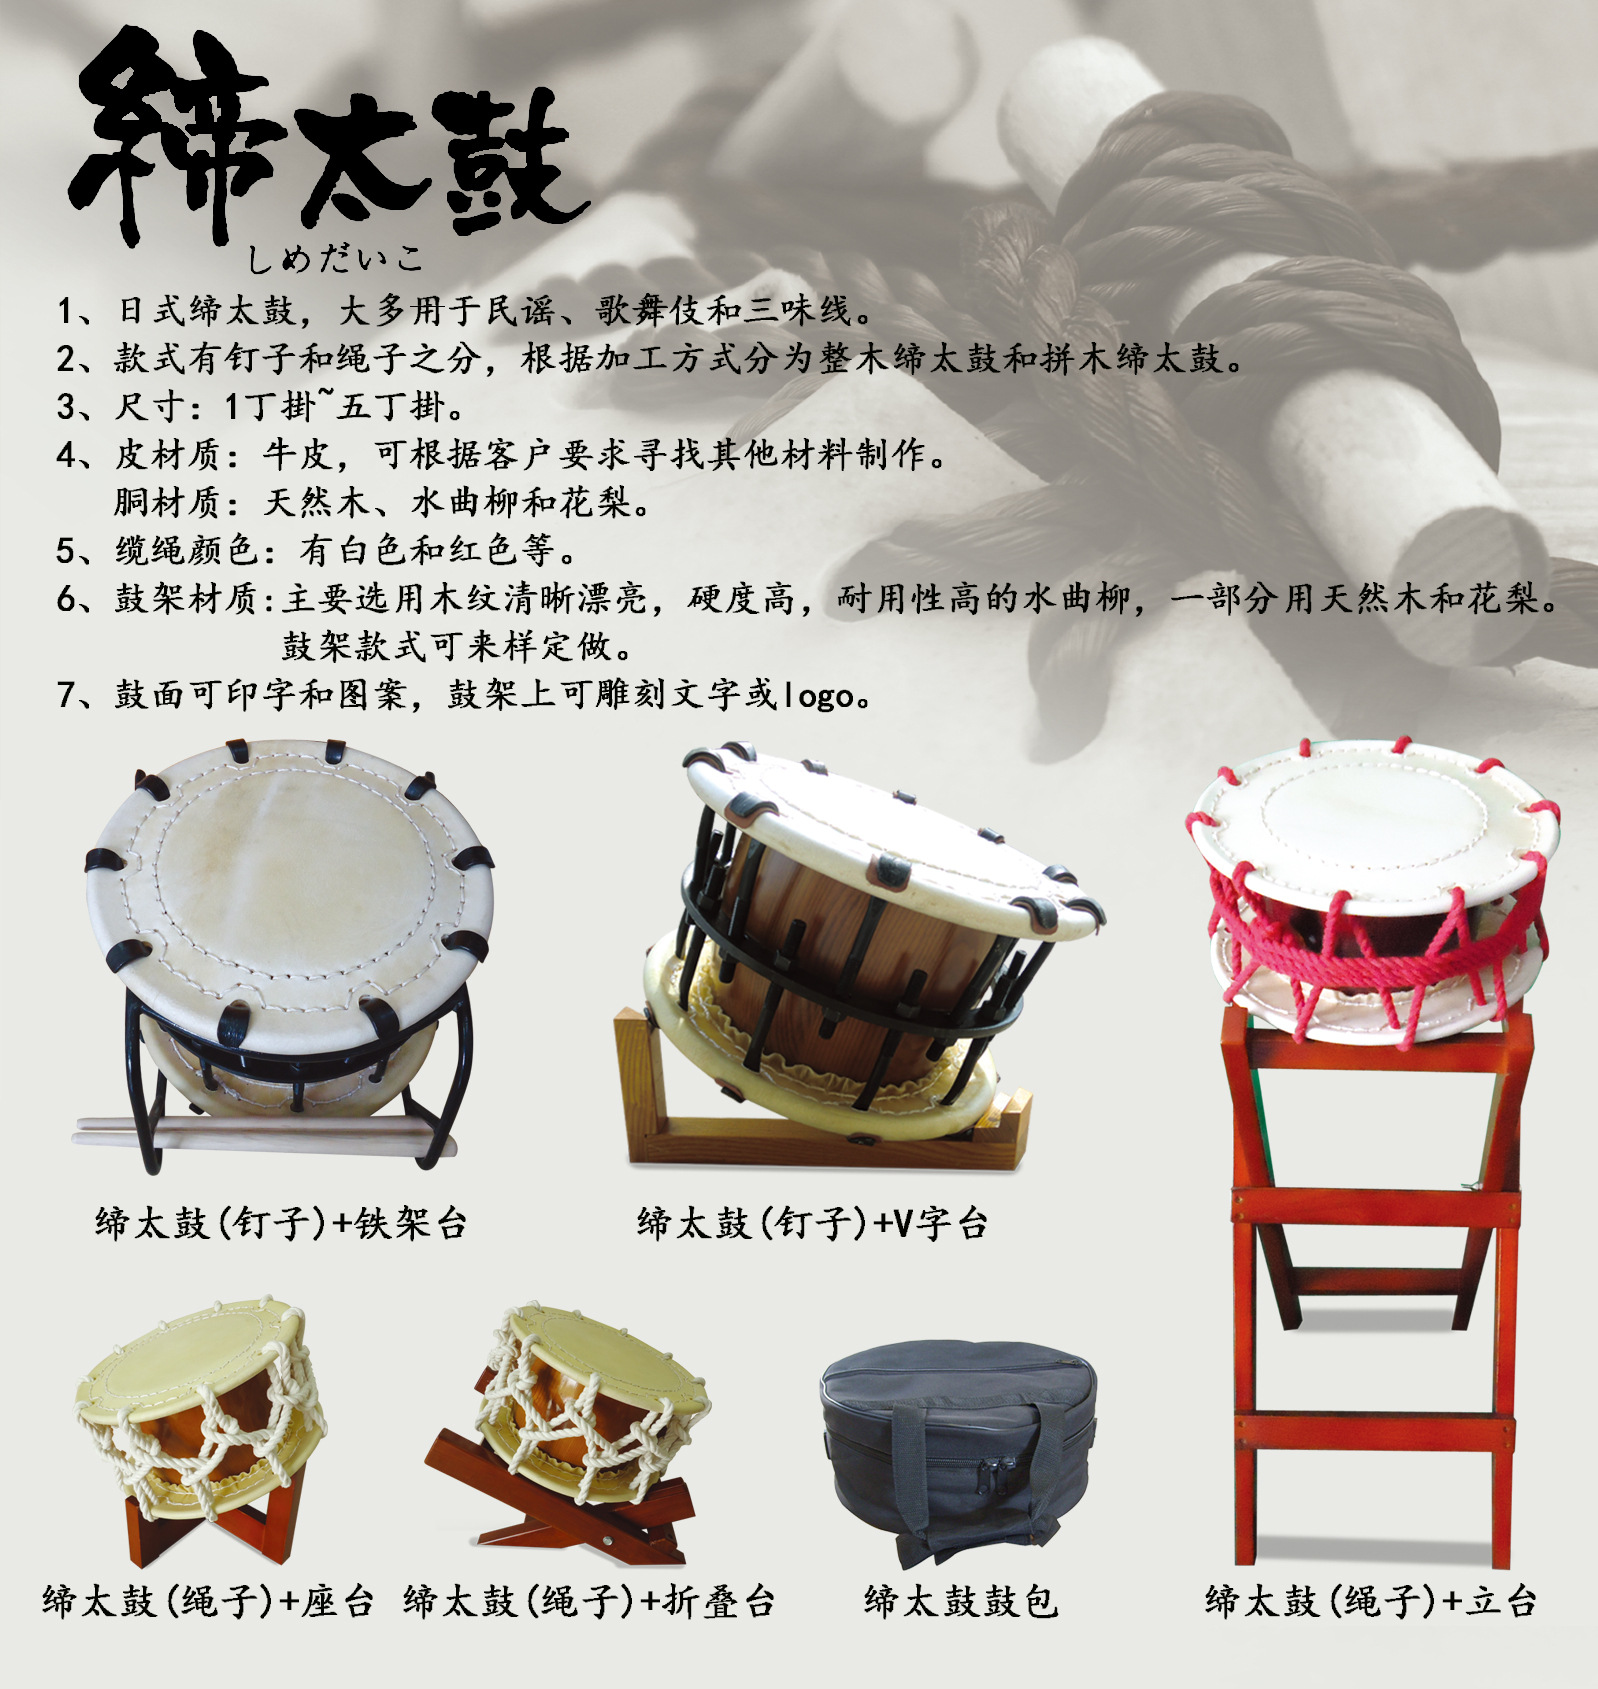 日本缔太鼓-学校/活动用鼓-厦门九木红乐器制造有限公司